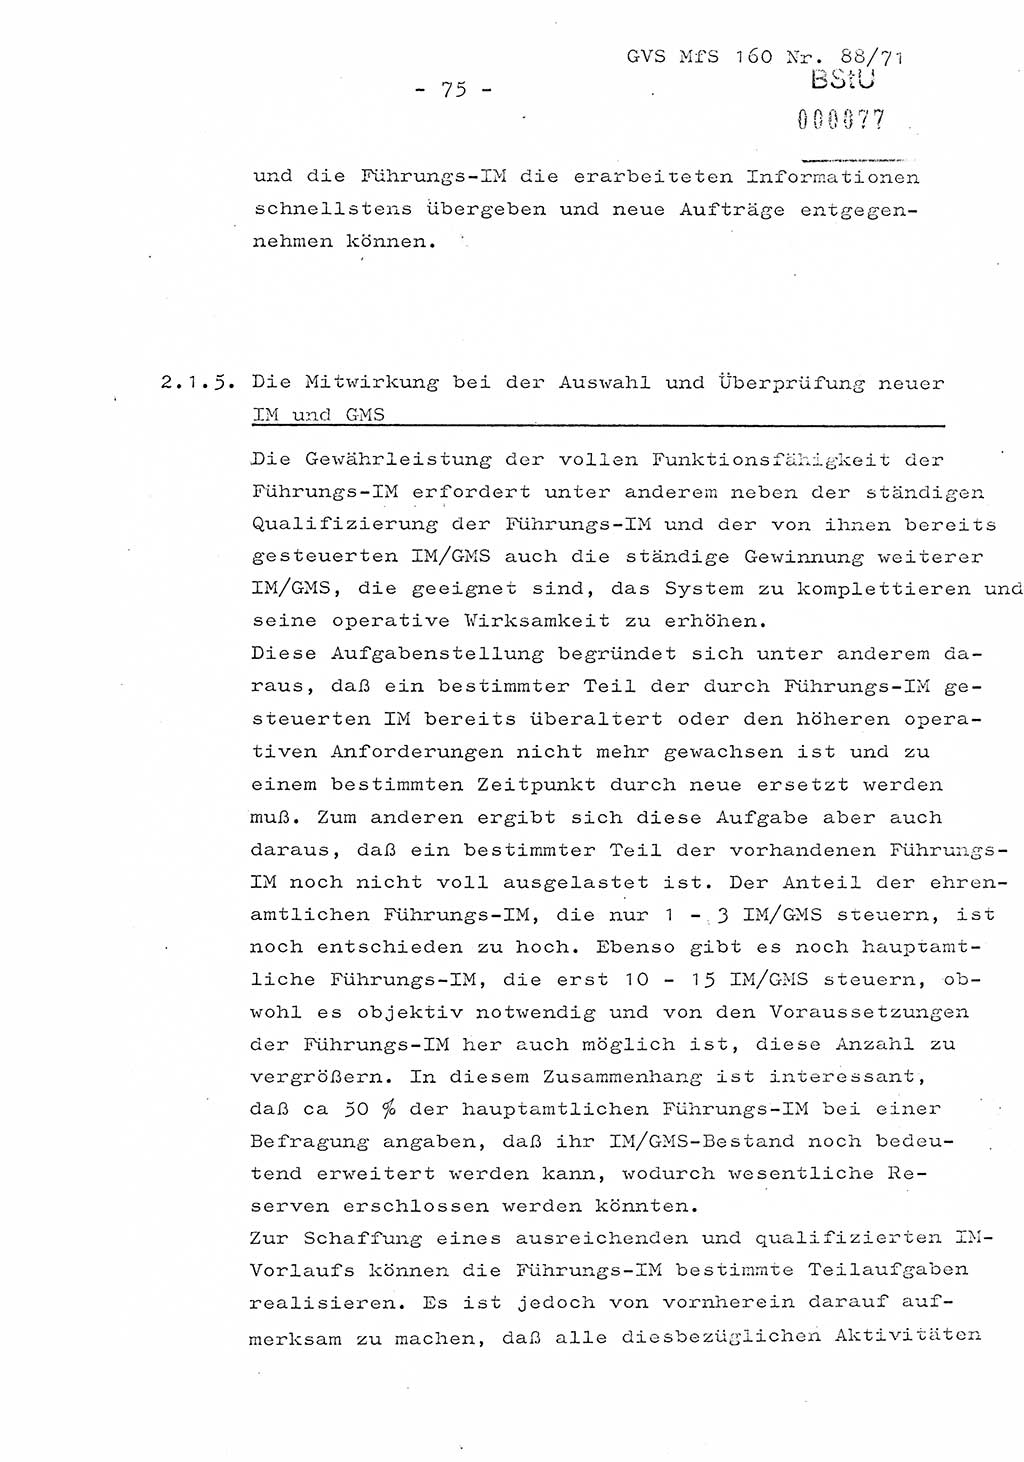 Dissertation Oberstleutnant Josef Schwarz (BV Schwerin), Major Fritz Amm (JHS), Hauptmann Peter Gräßler (JHS), Ministerium für Staatssicherheit (MfS) [Deutsche Demokratische Republik (DDR)], Juristische Hochschule (JHS), Geheime Verschlußsache (GVS) 160-88/71, Potsdam 1972, Seite 75 (Diss. MfS DDR JHS GVS 160-88/71 1972, S. 75)